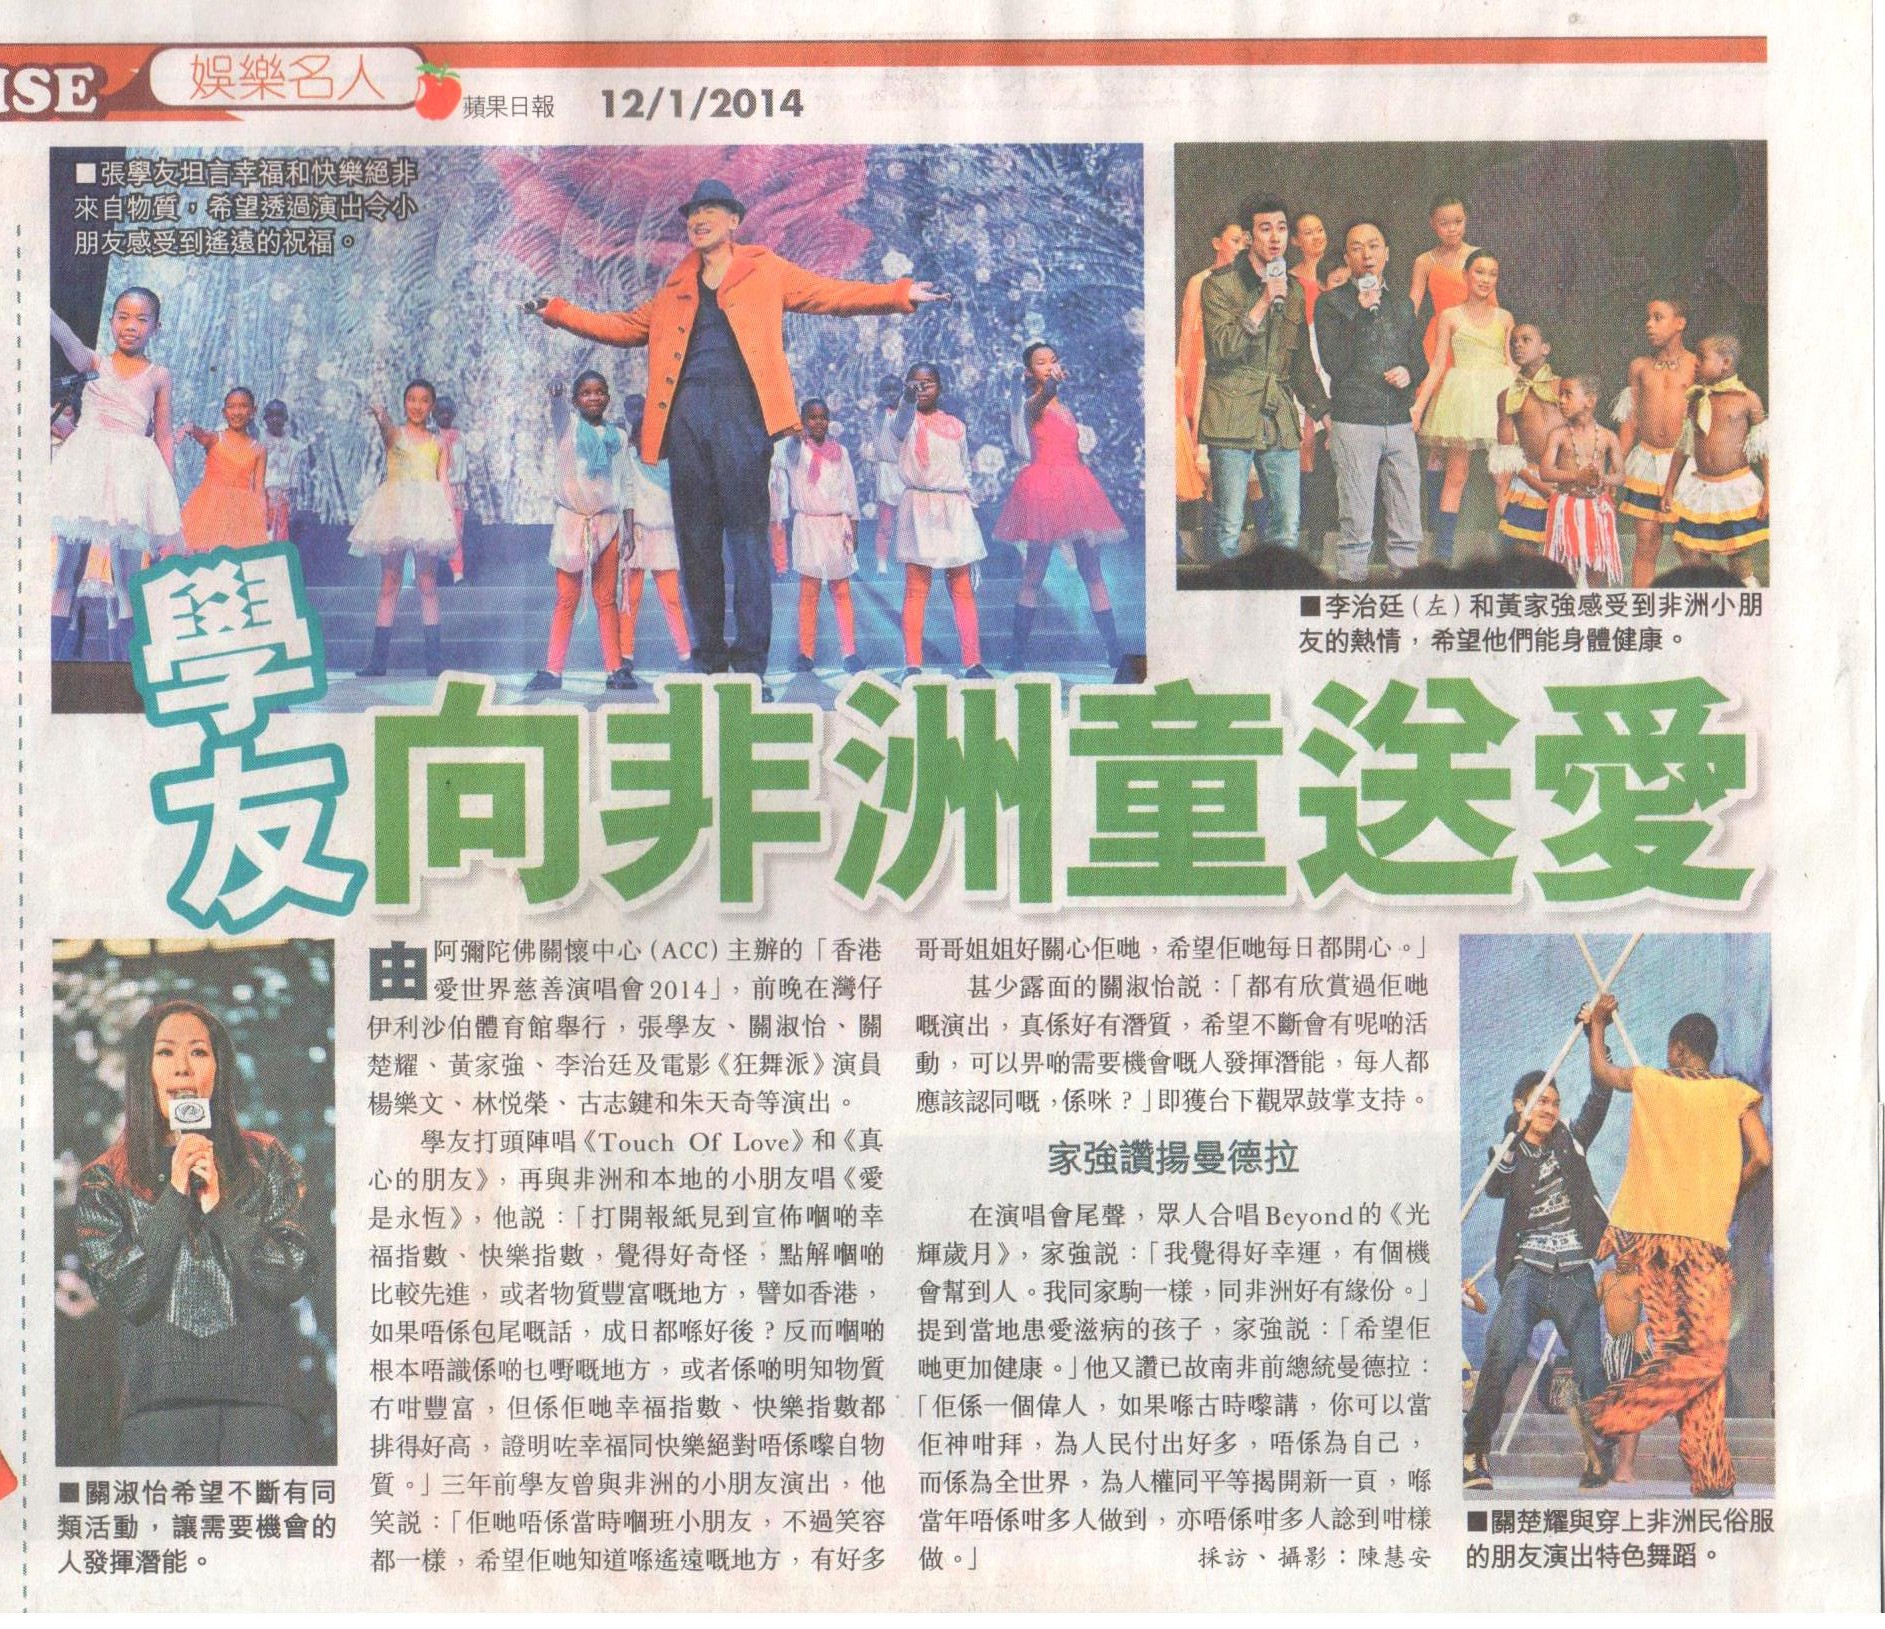 Hong Kong’s Apple Daily